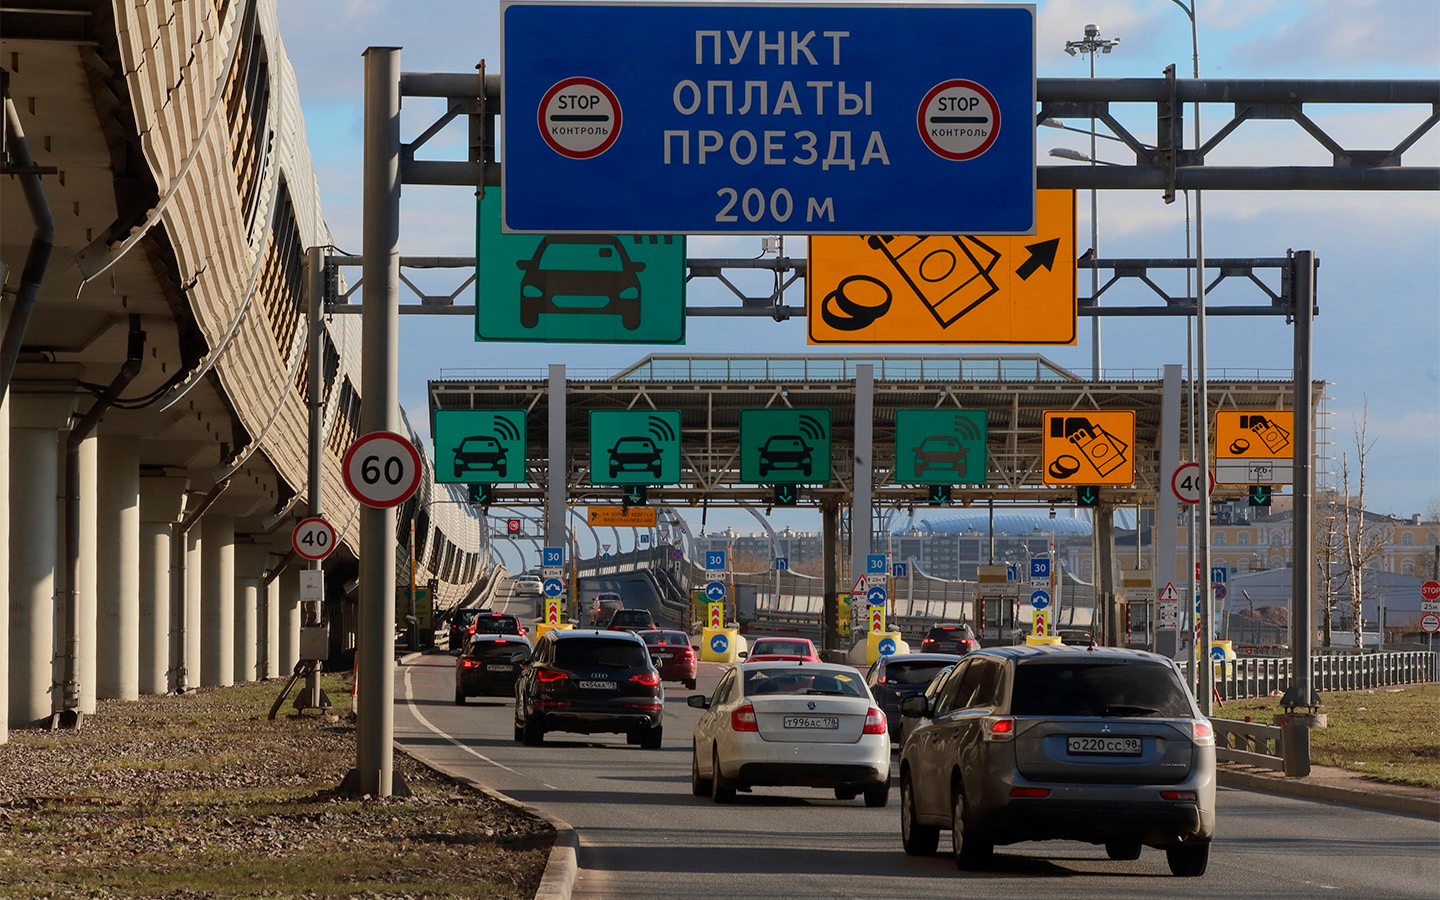 Zsd для поездки на машине по трассе m11 от Новгорода до Санкт-Петербурга